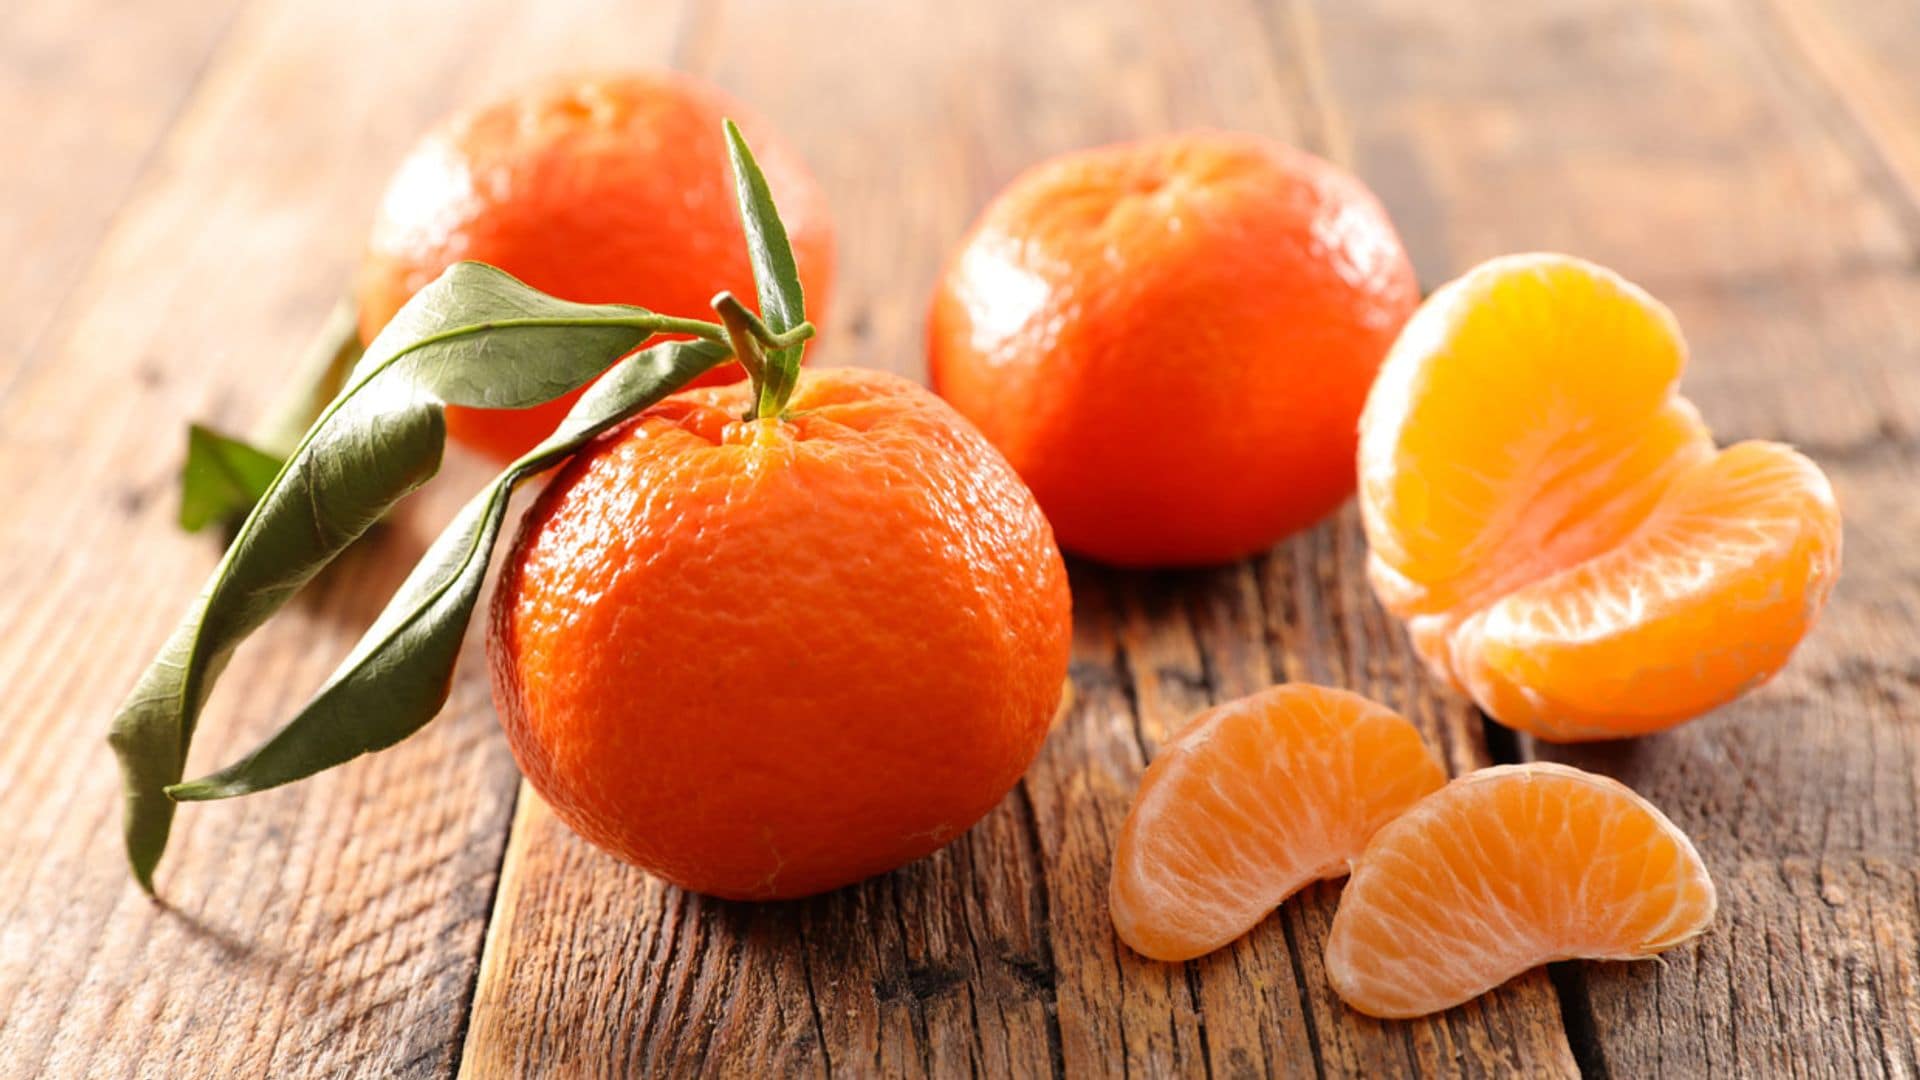 La mandarina puede ayudarte a perder grasa